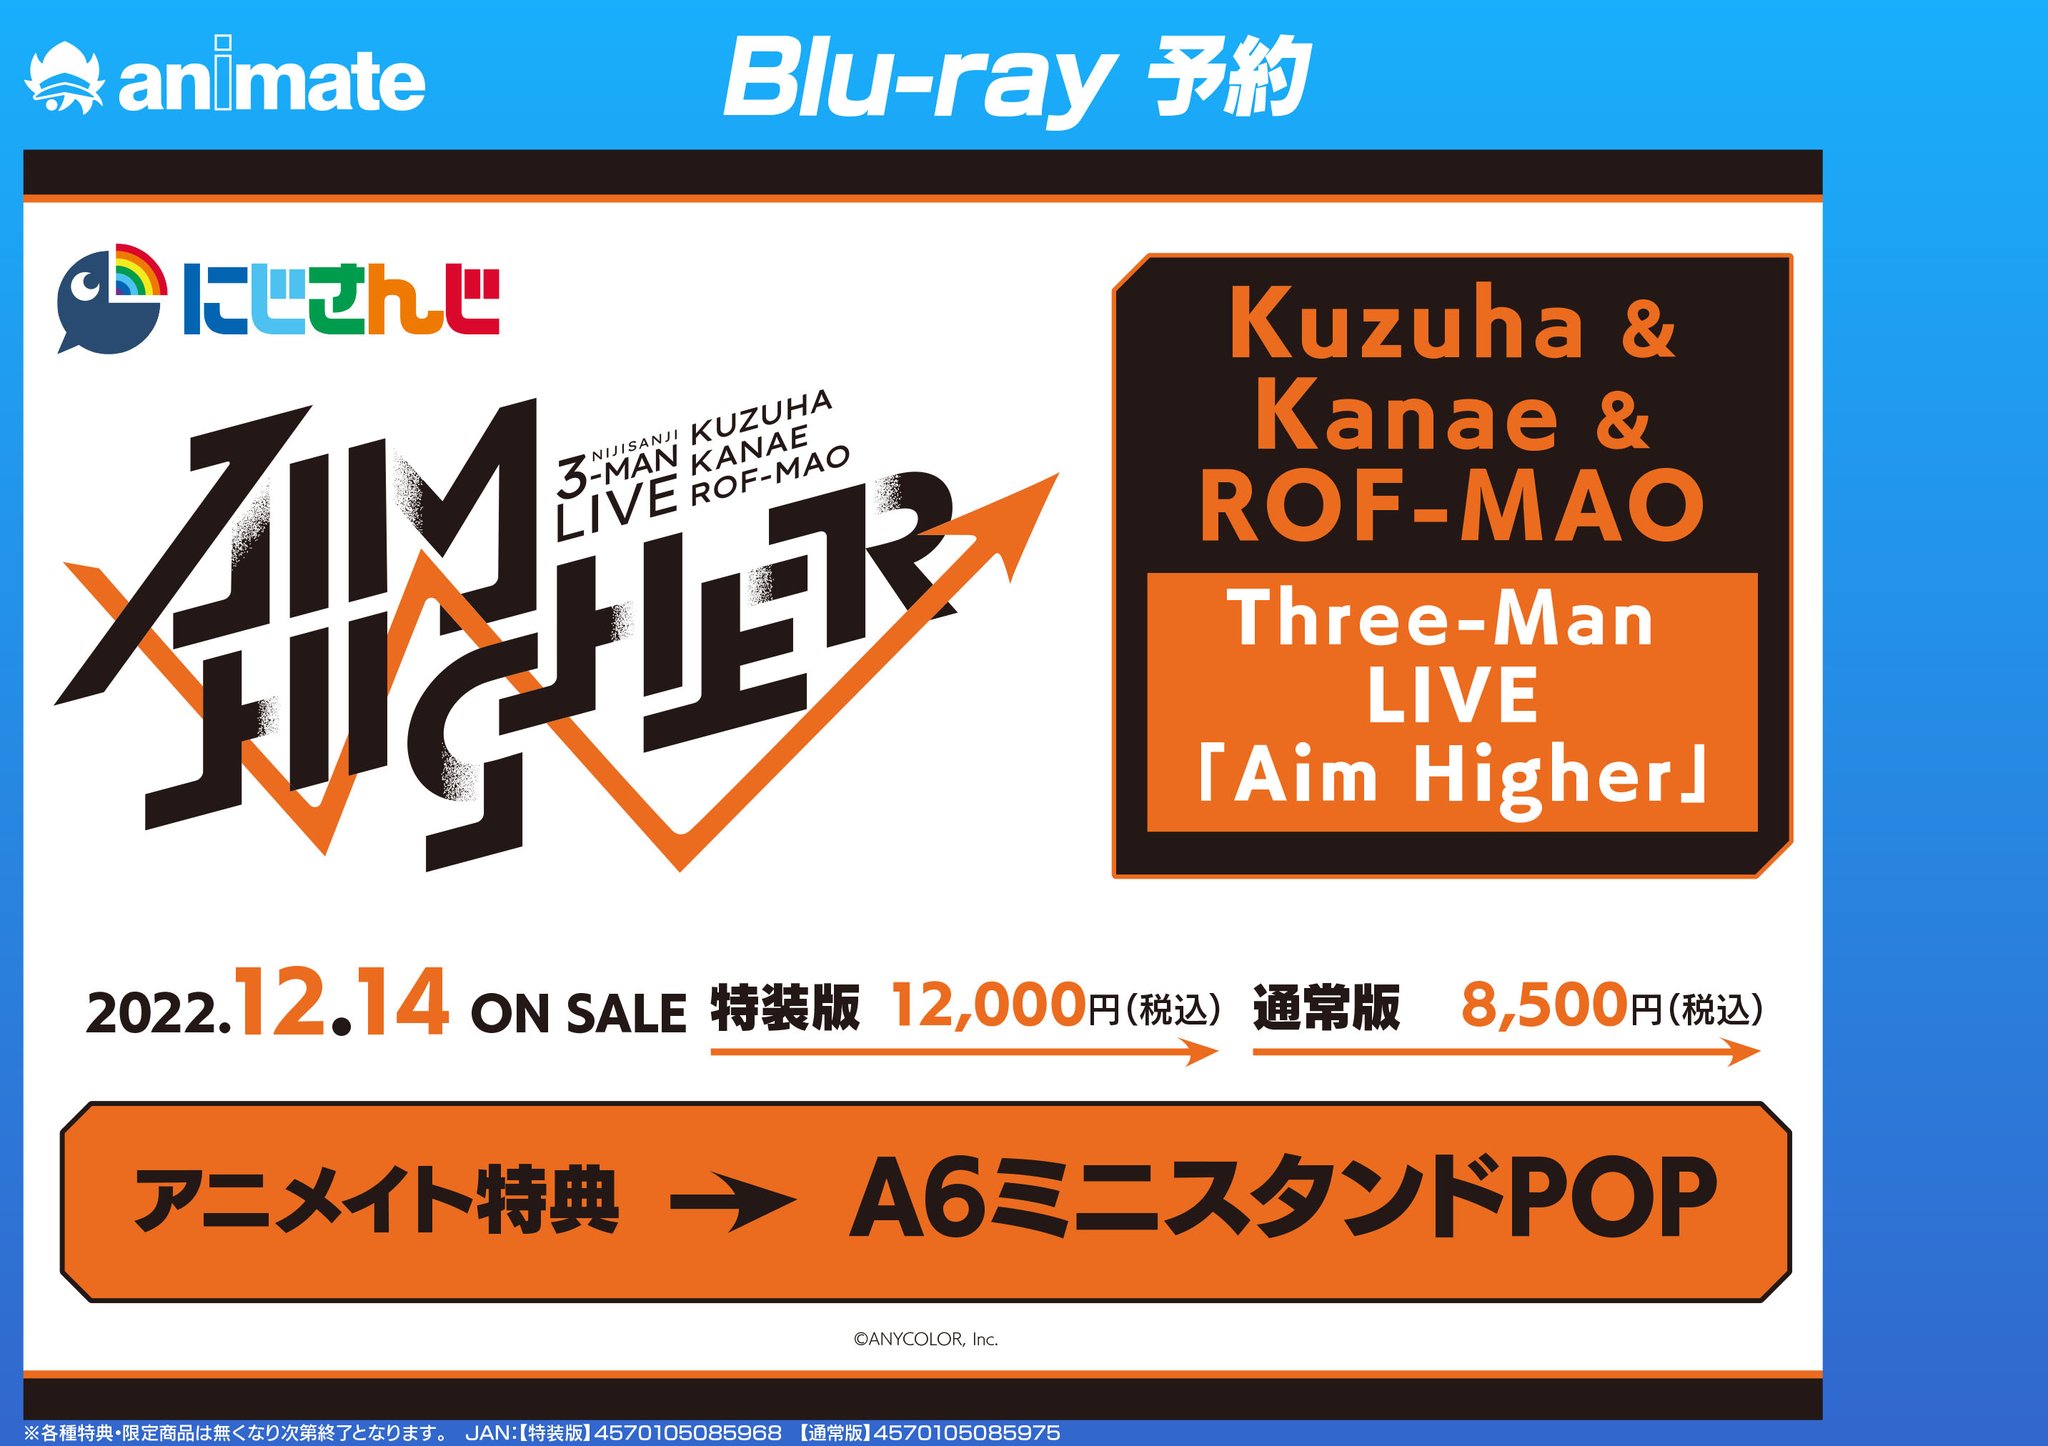 にじさんじ Aim Higher Blu-ray 特装版LIVE blu-ray - アイドル